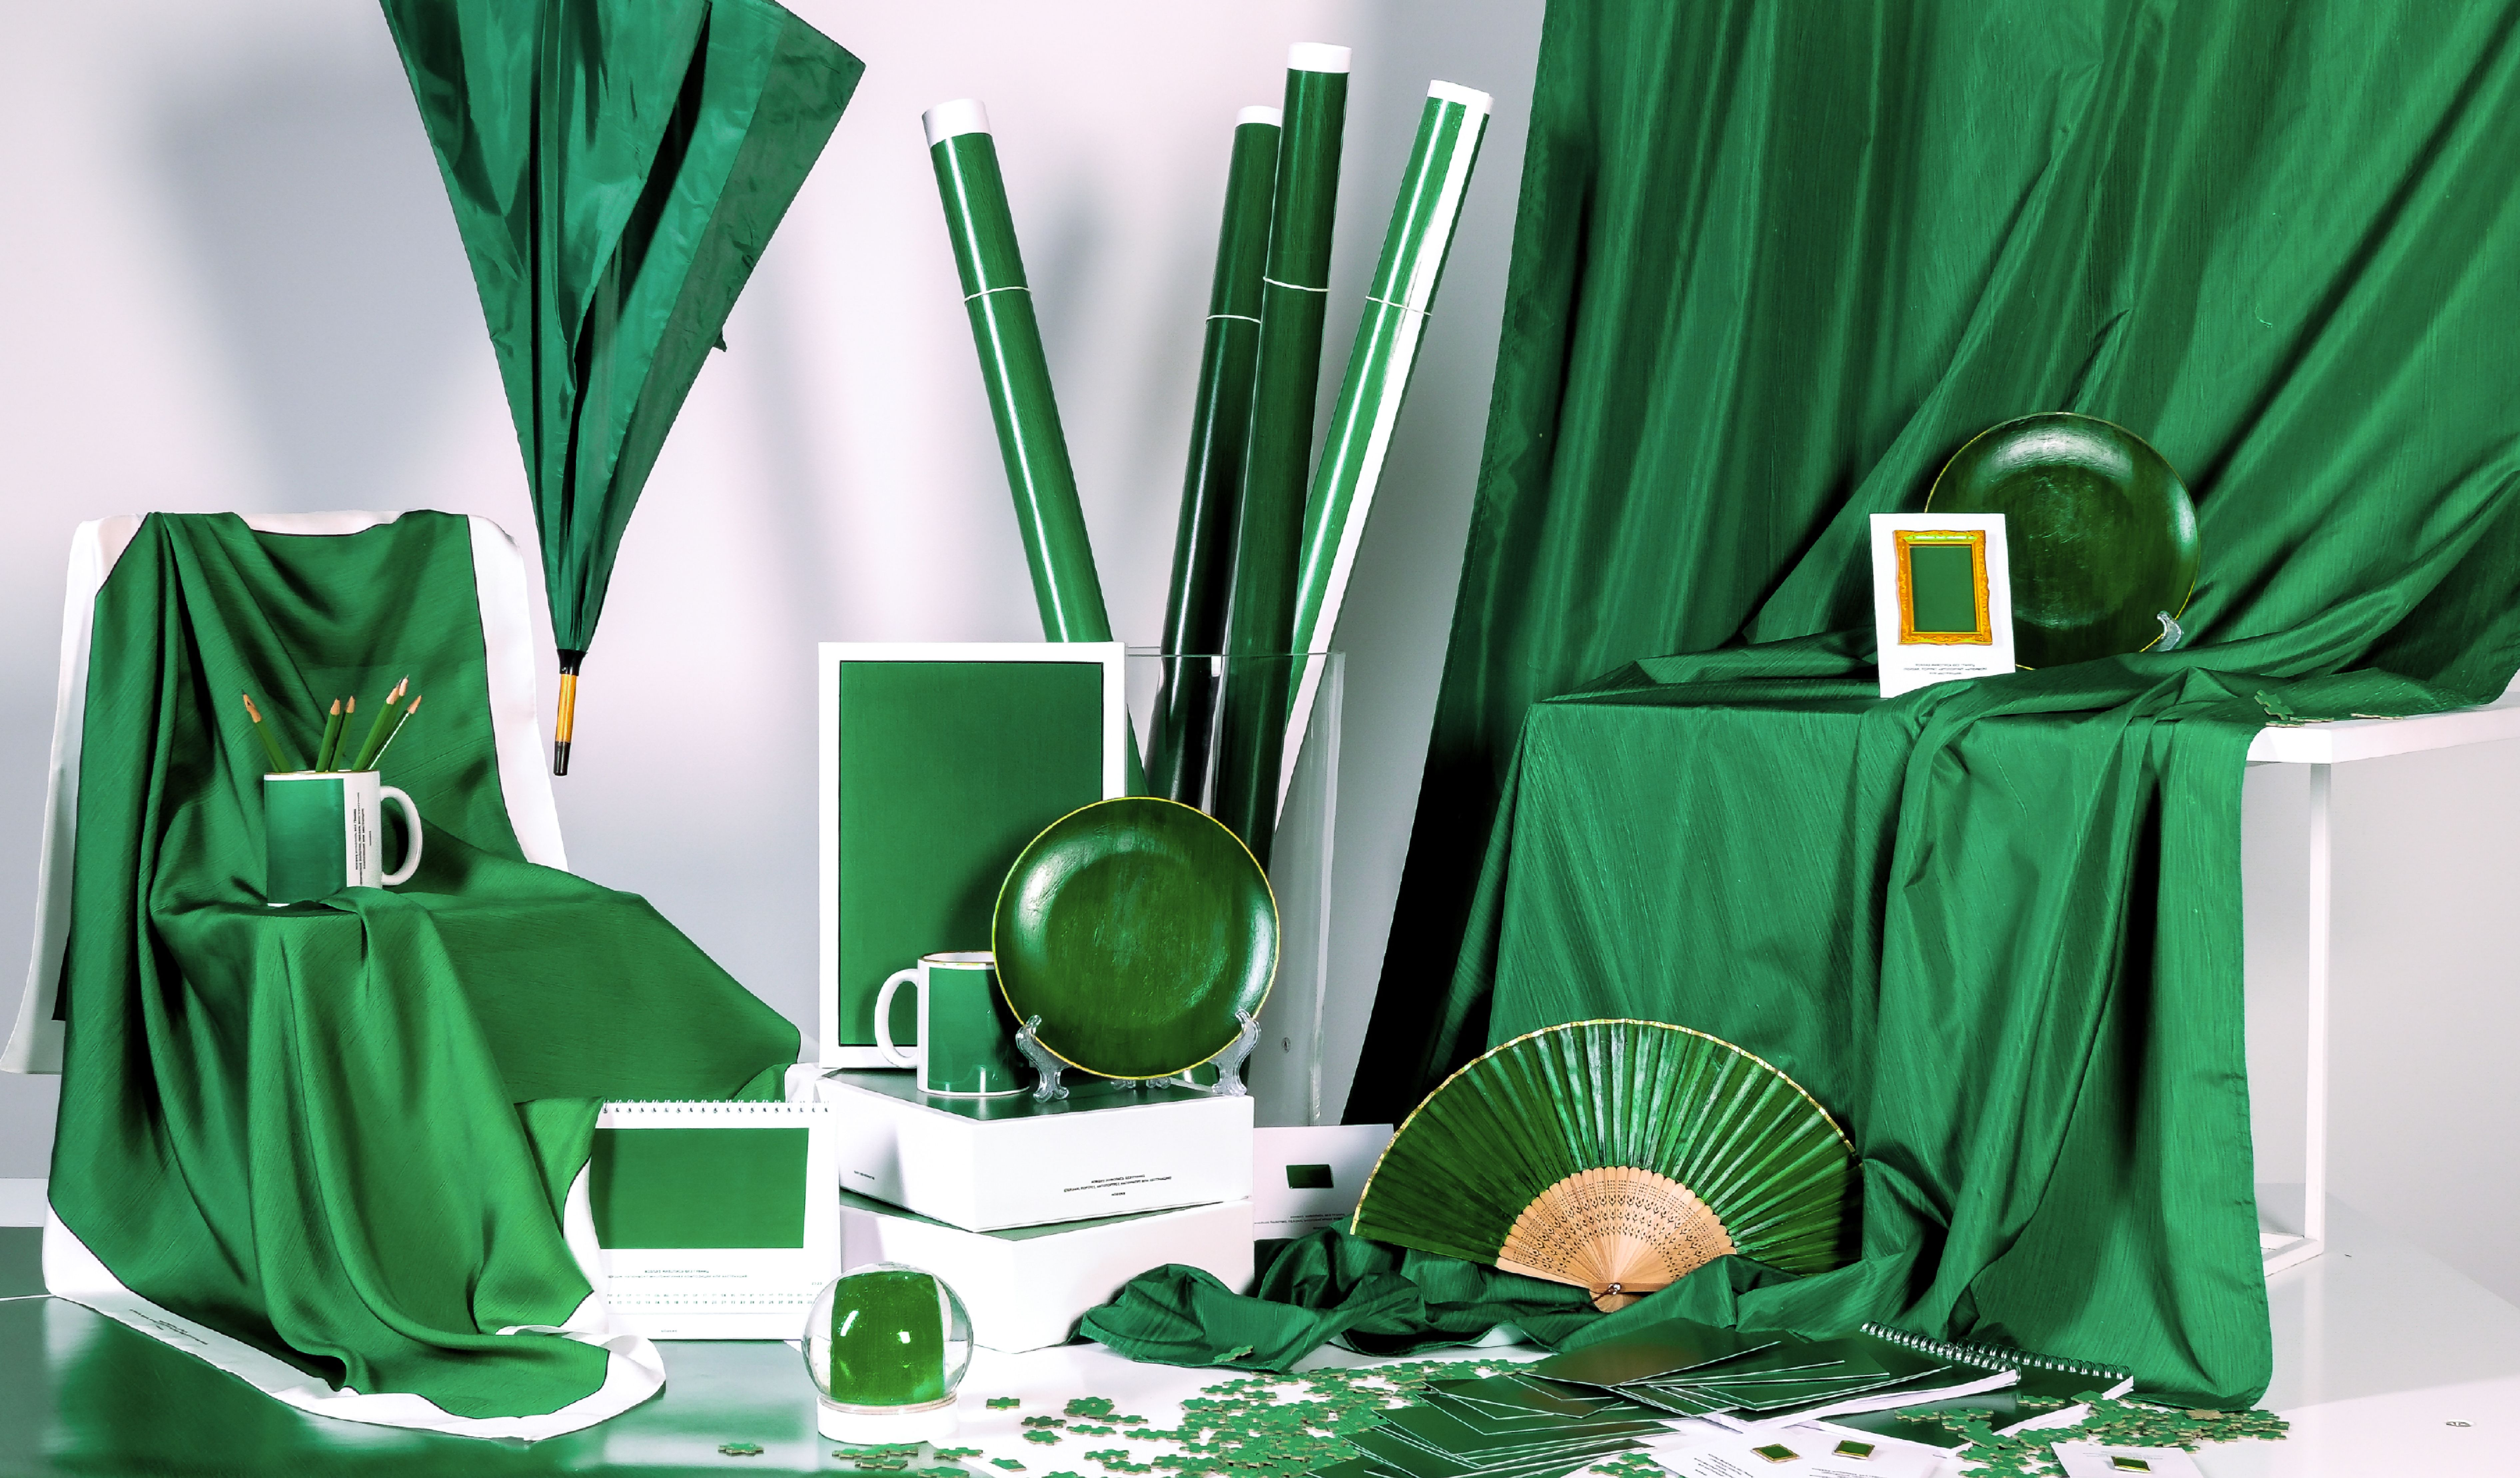 Изображение. Постановочное фото — на фоне драпировки из зеленой ткани расставлены предметы: чашки, карандаши, веер, рамка для фотографий, стеклянный шар, тарелки. Все выдержано в зелено-бело-золотой цветовой гамме